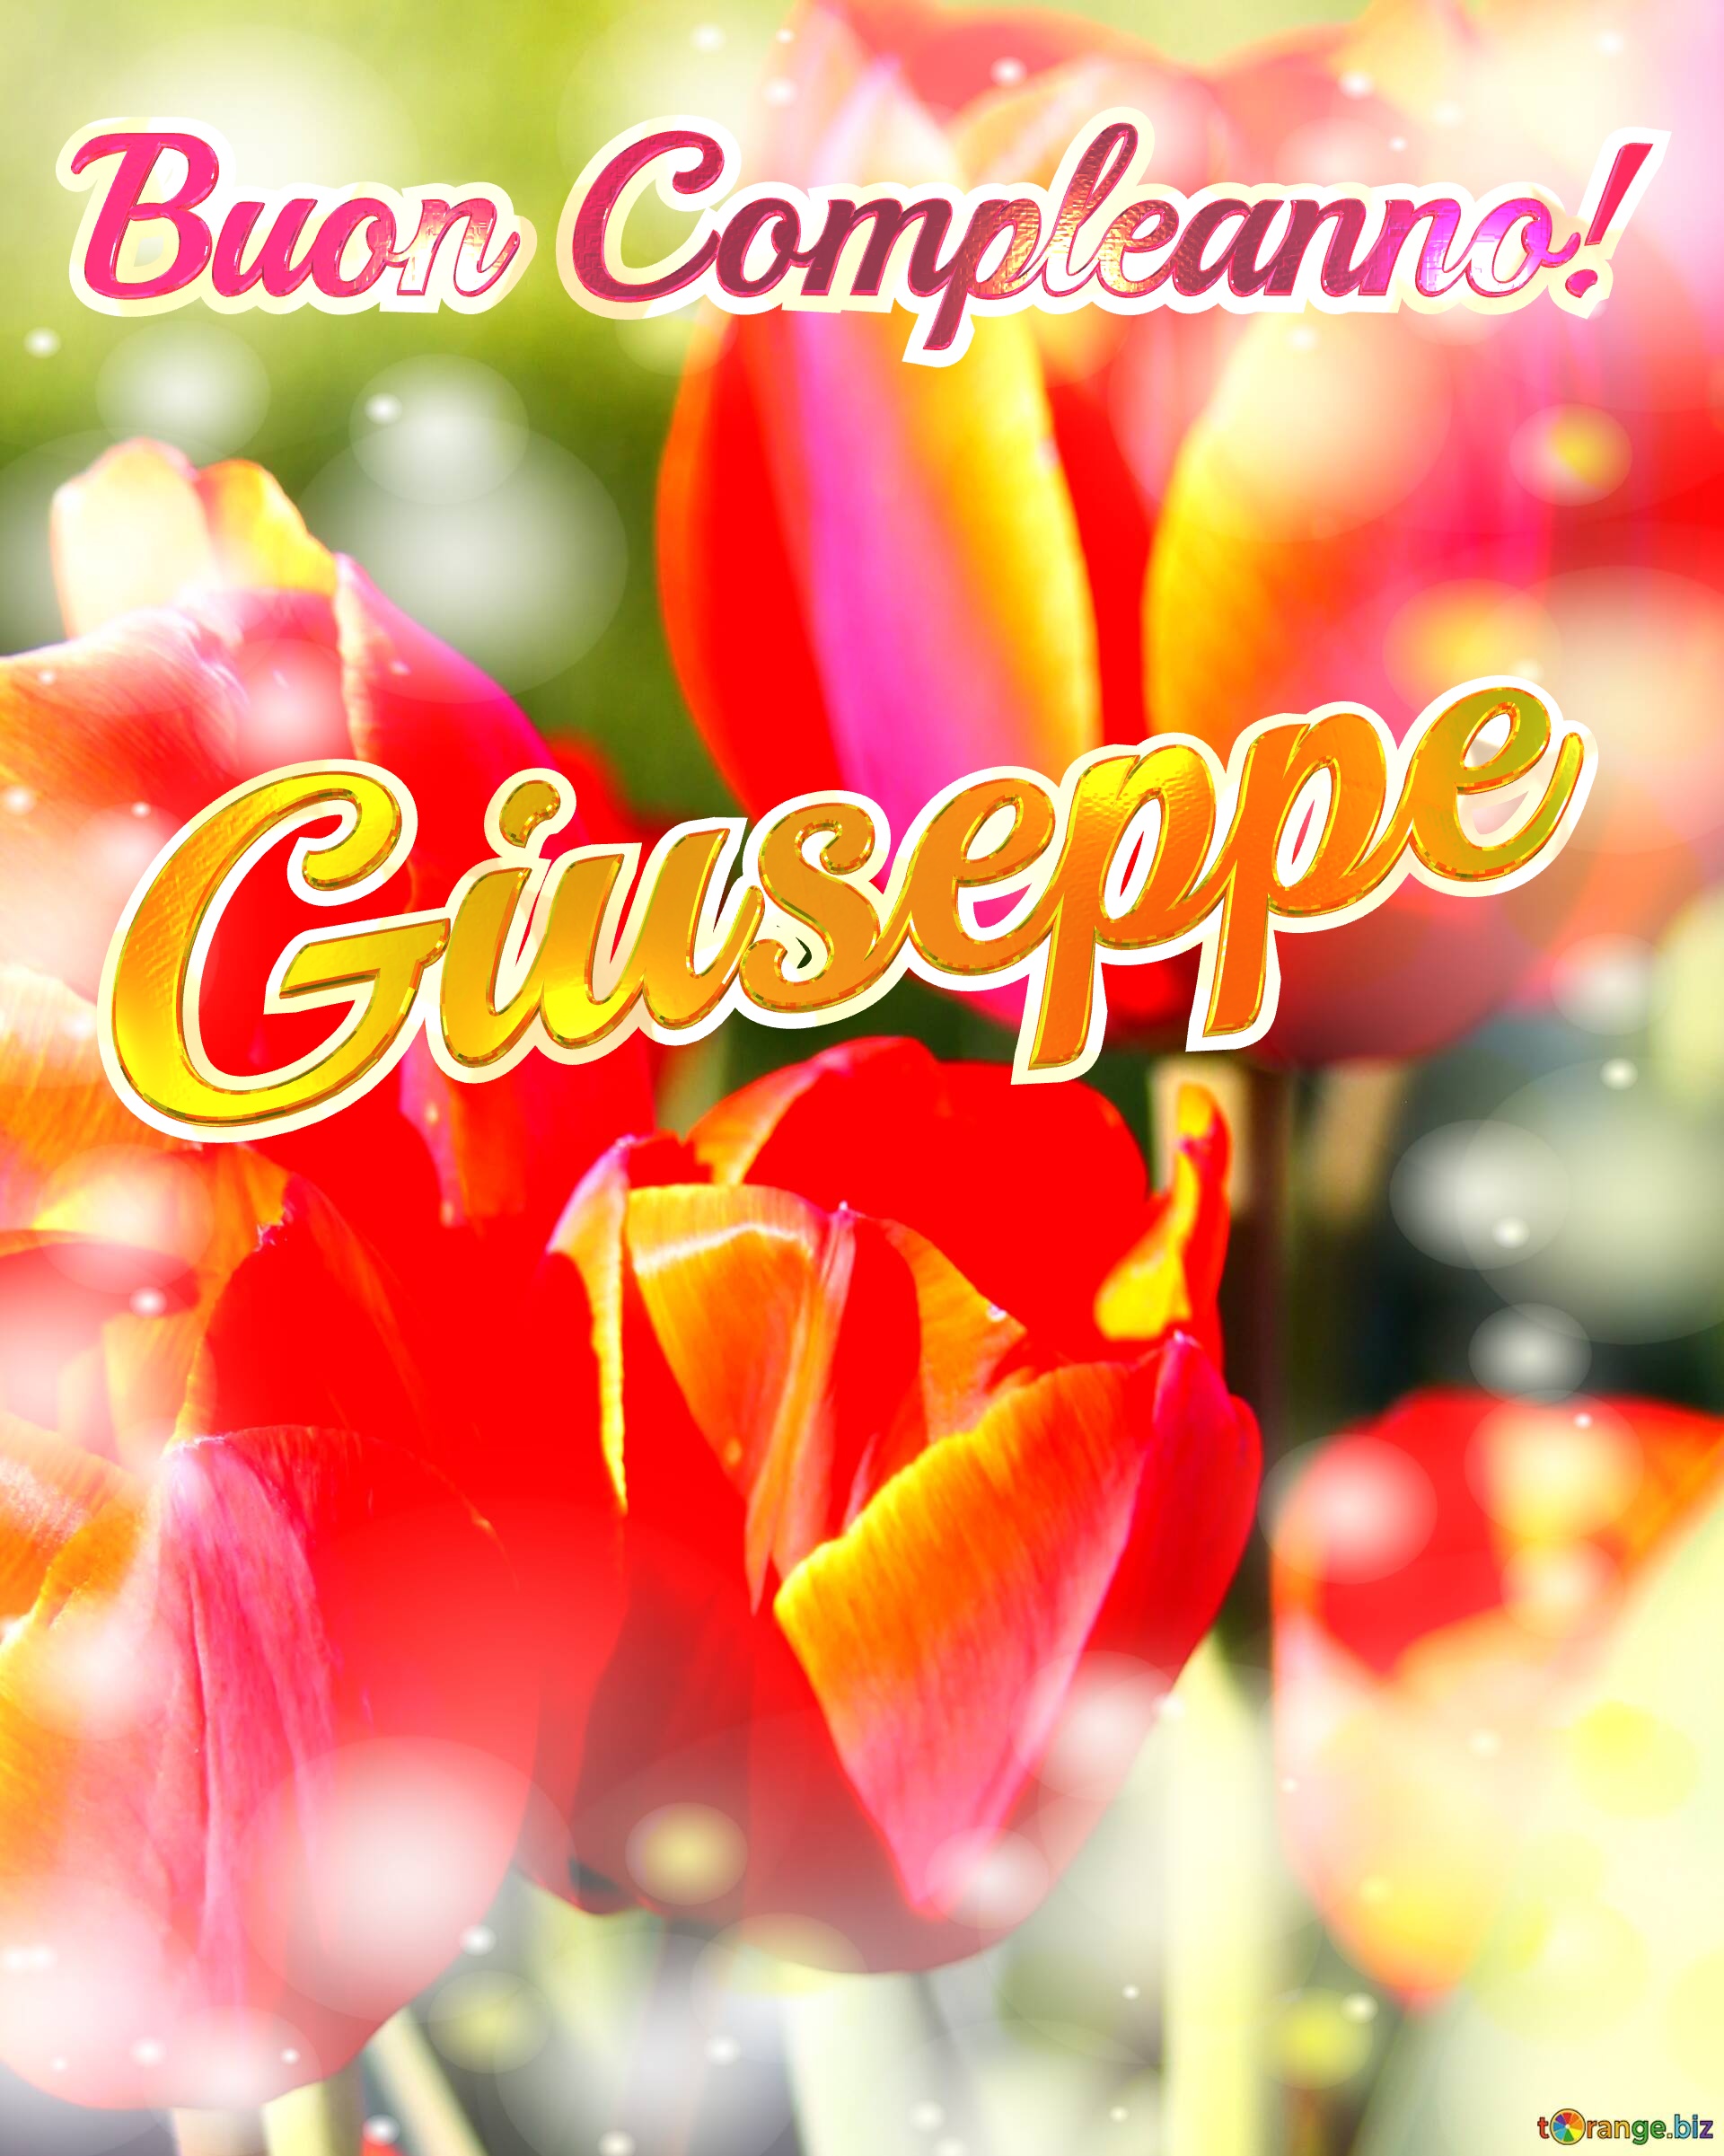 Buon Compleanno! Giuseppe  La bellezza dei tulipani è un richiamo alla bellezza della vita, auguri per una vita piena di bellezza e soddisfazione. №0